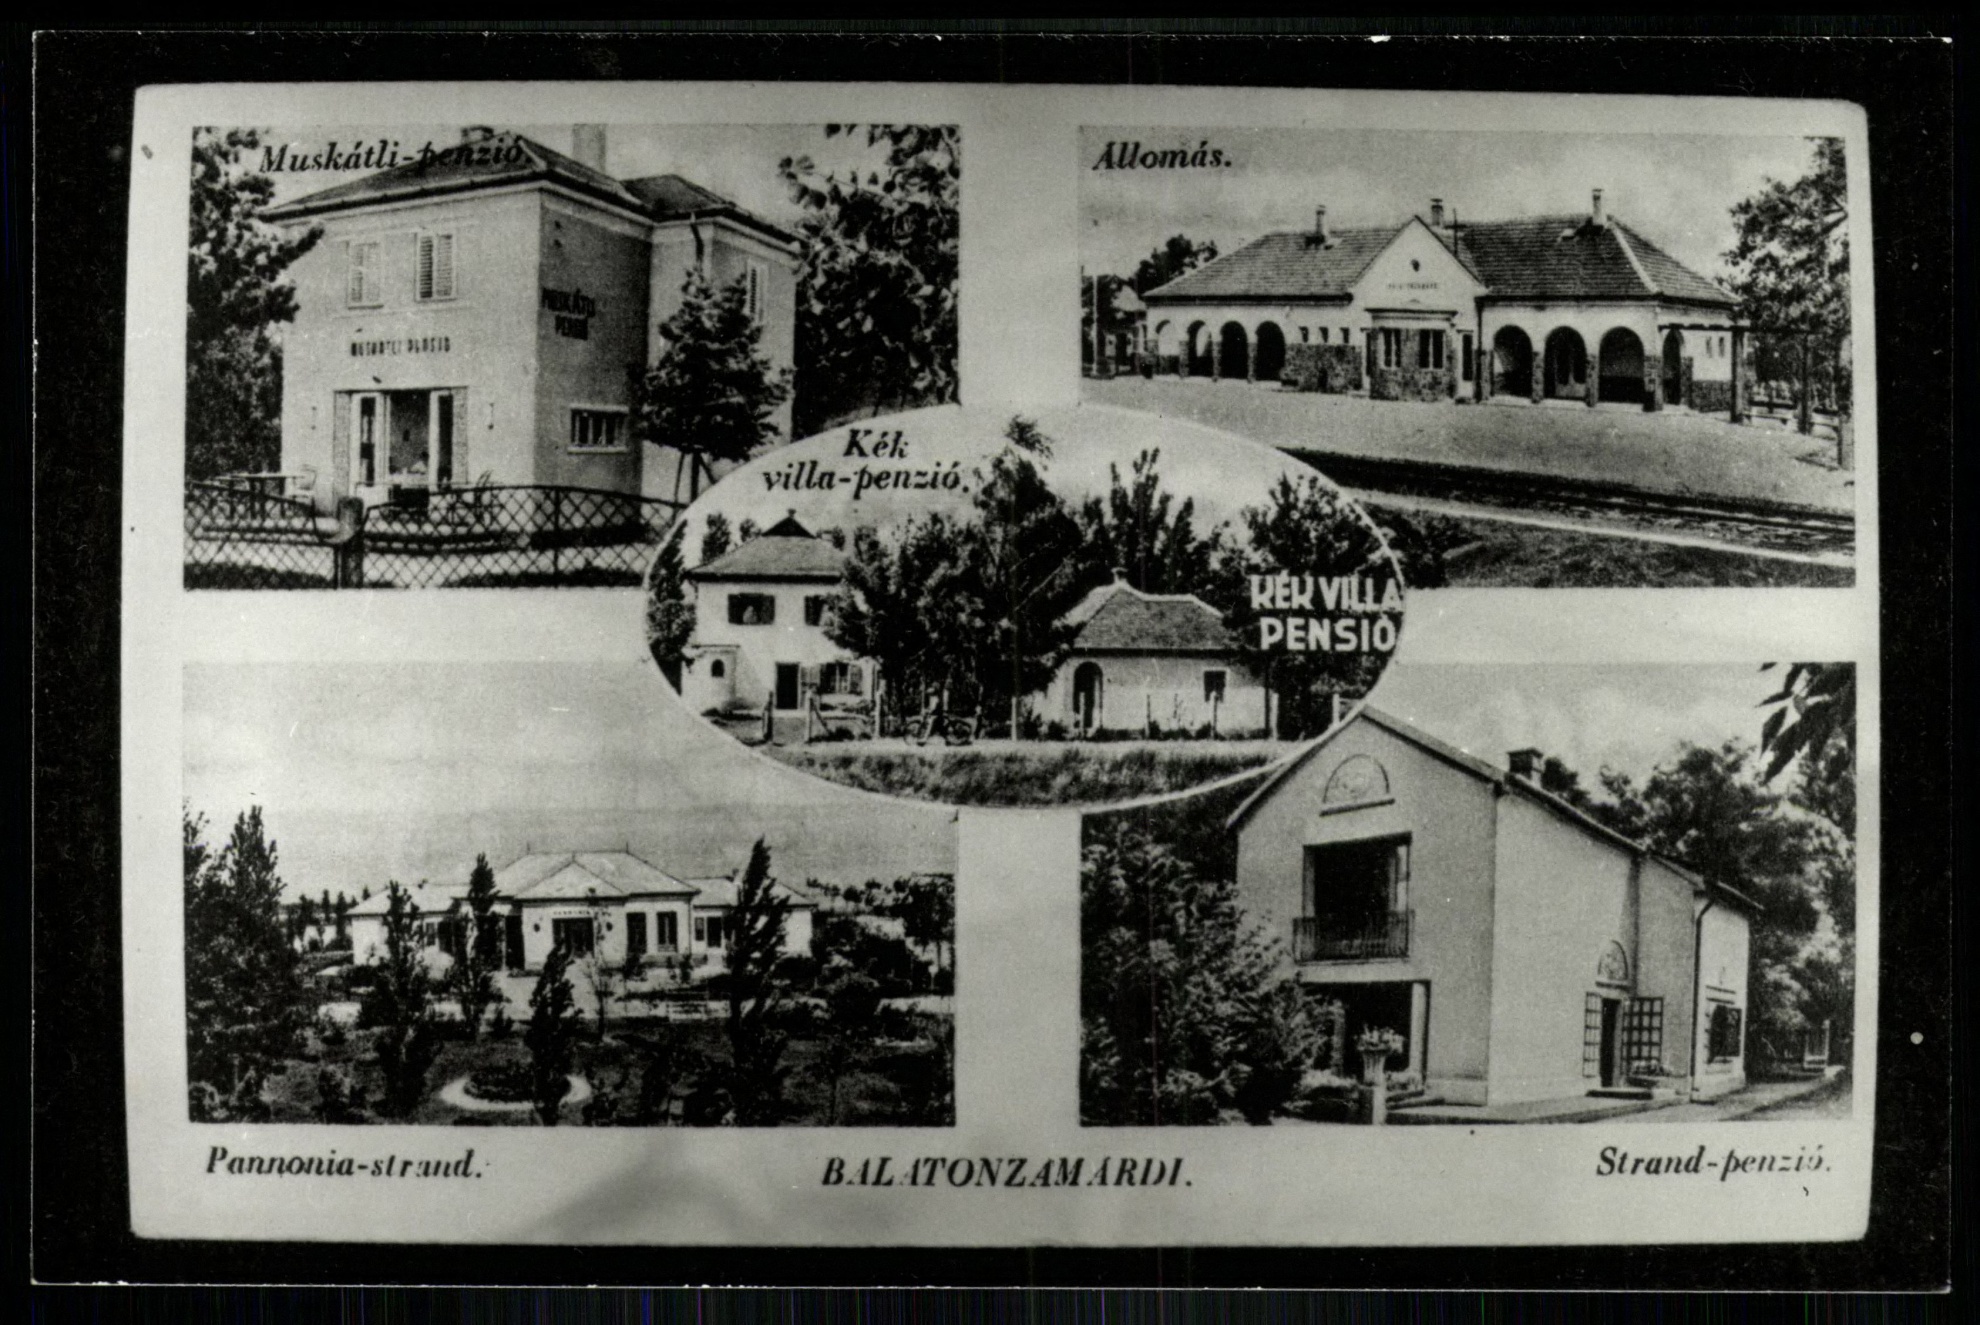 Balatonzamárdi Muskátli-penzió, Állomás, Pannonia-strand, Kék villa-penzió, Strand-penzió, Állomás (Magyar Kereskedelmi és Vendéglátóipari Múzeum CC BY-NC-ND)